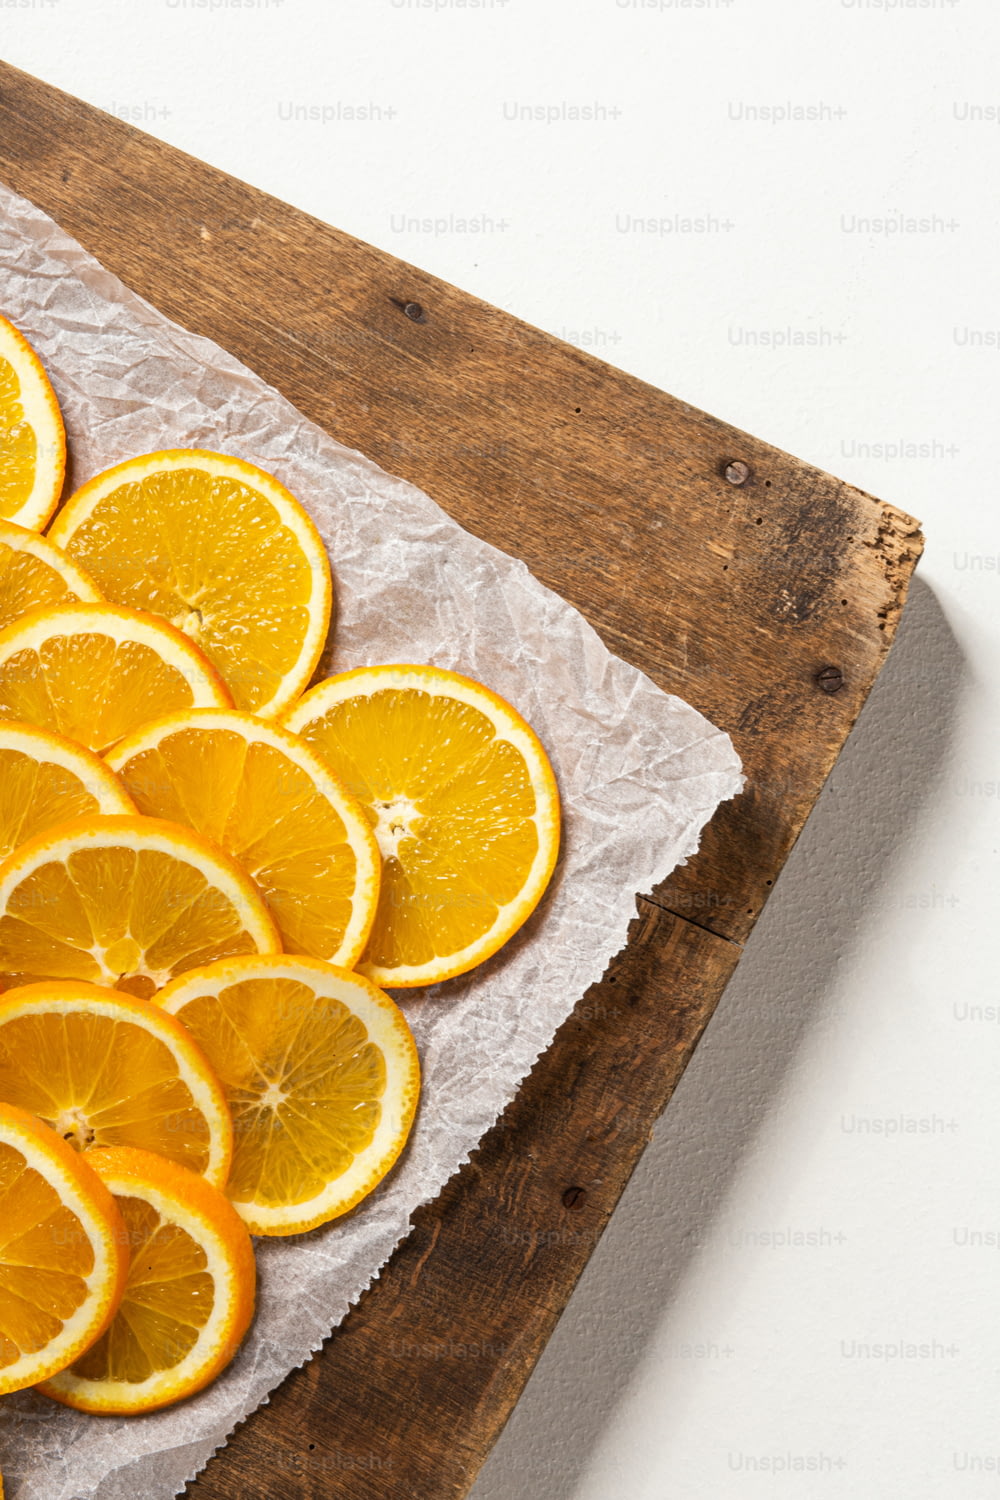 a sliced orange on a cutting board